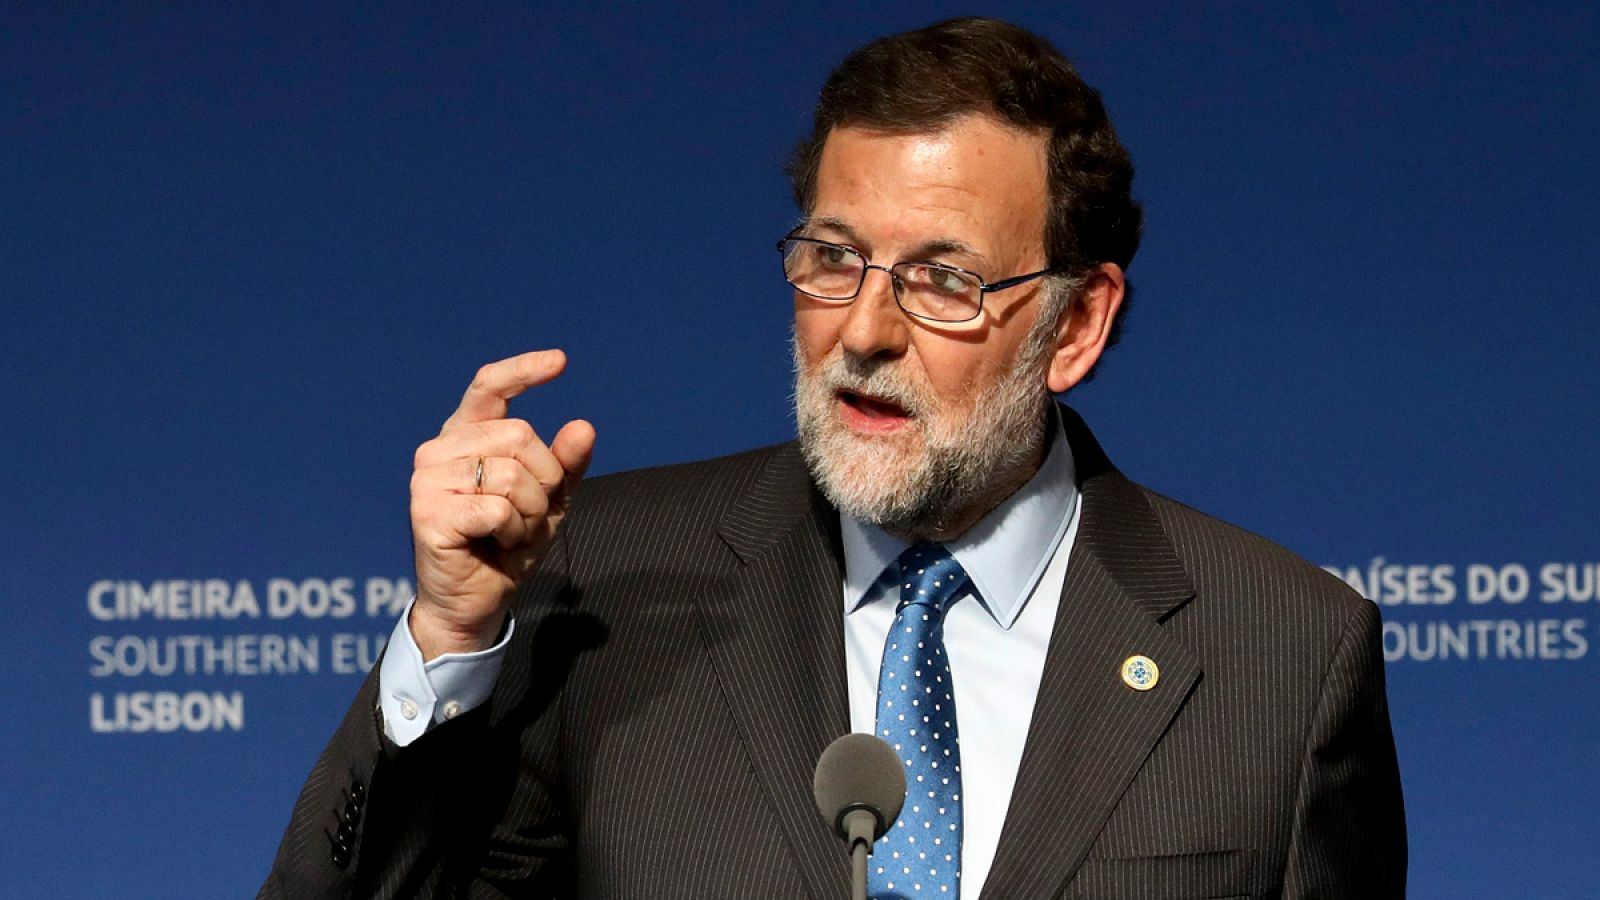 El presidente del Congreso, Mariano Rajoy